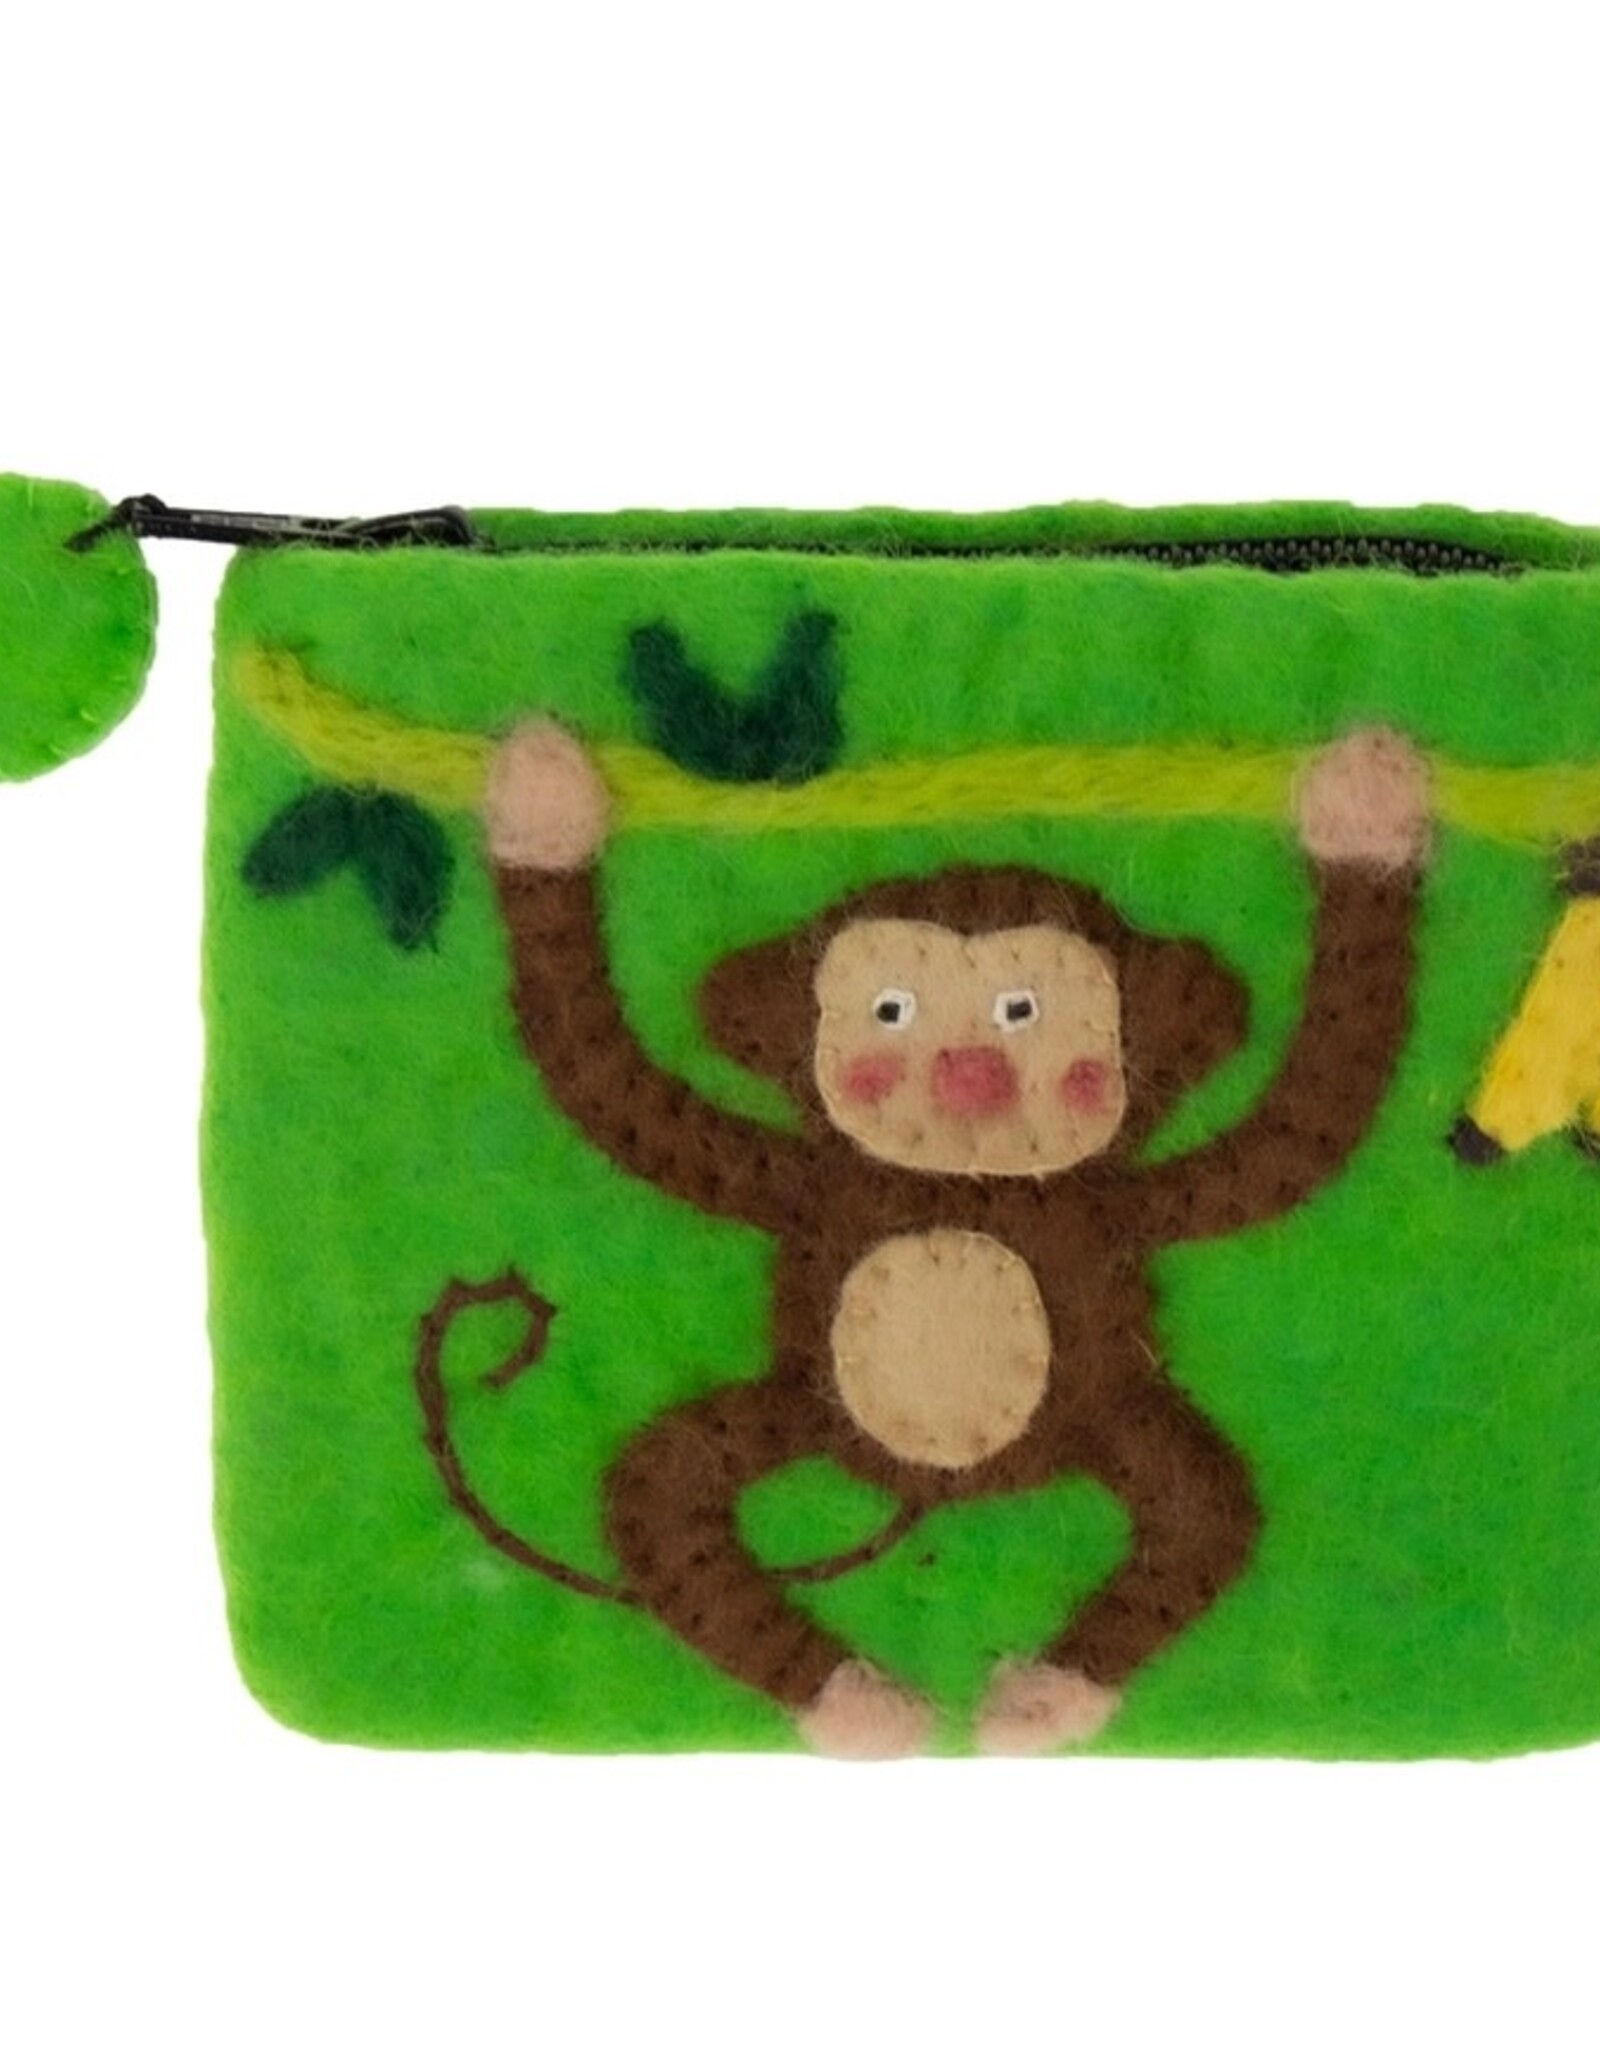 Global Crafts Monkey Felt Coin Zipper Pouch